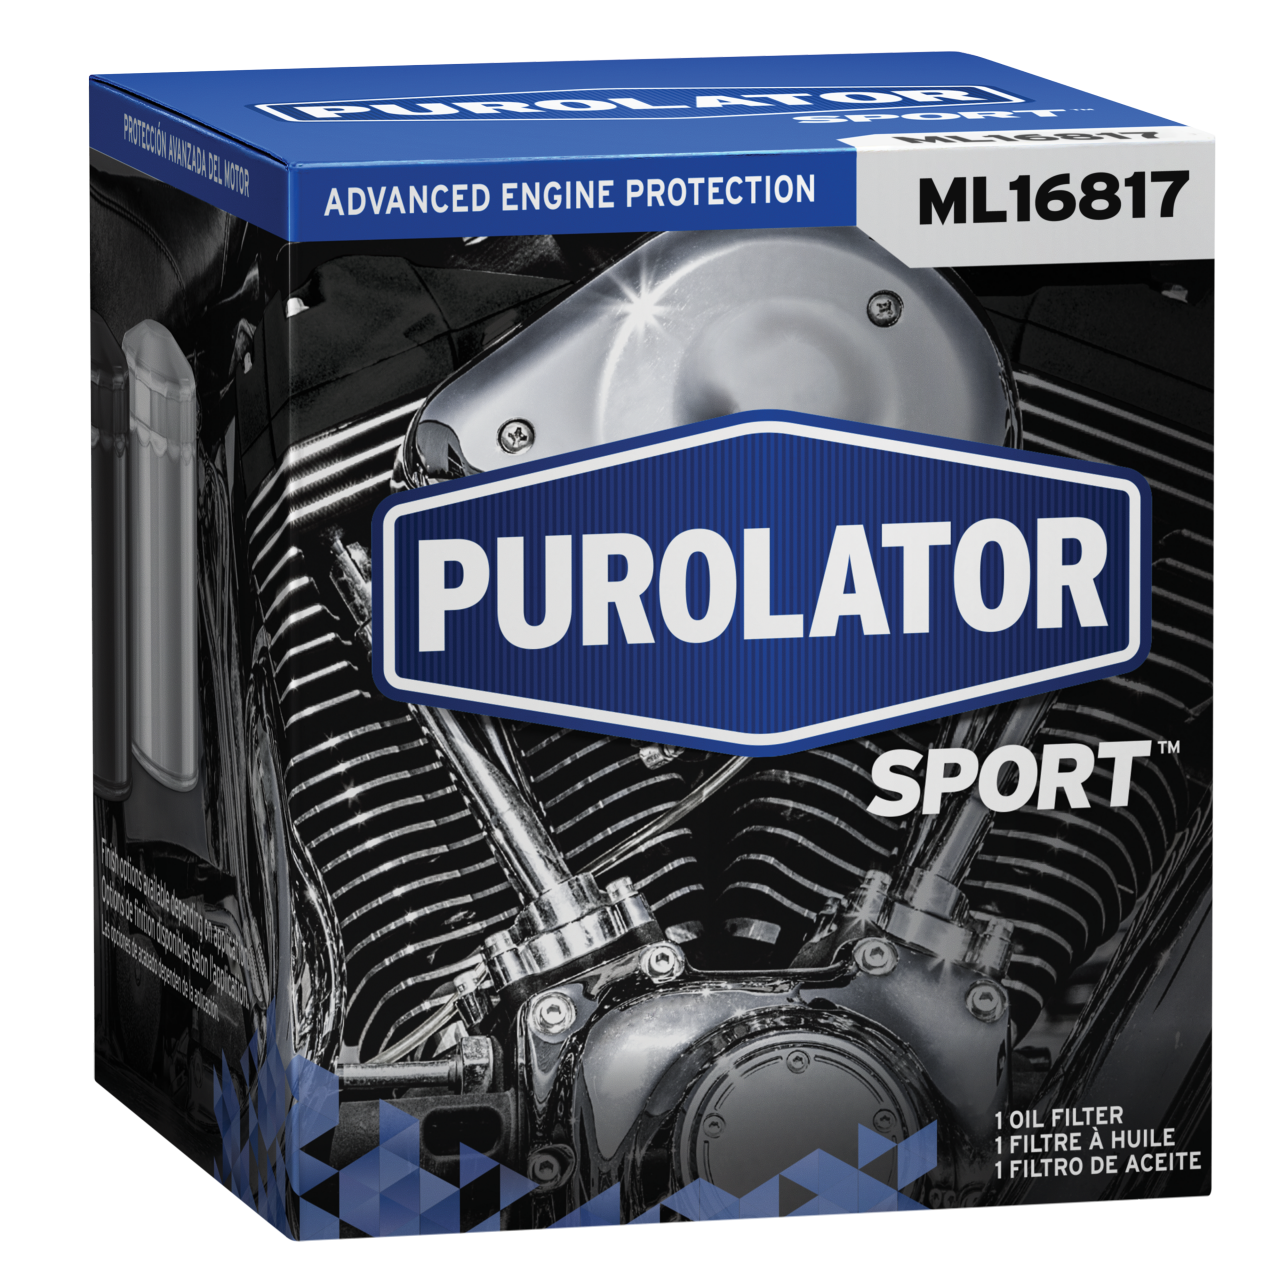 Les filtres à huile PurolatorSPORT™ offrent une protection élevée contre la saleté et le moteur pour les motocyclettes, les VTT, les motoneiges et les embarcations de plaisance.